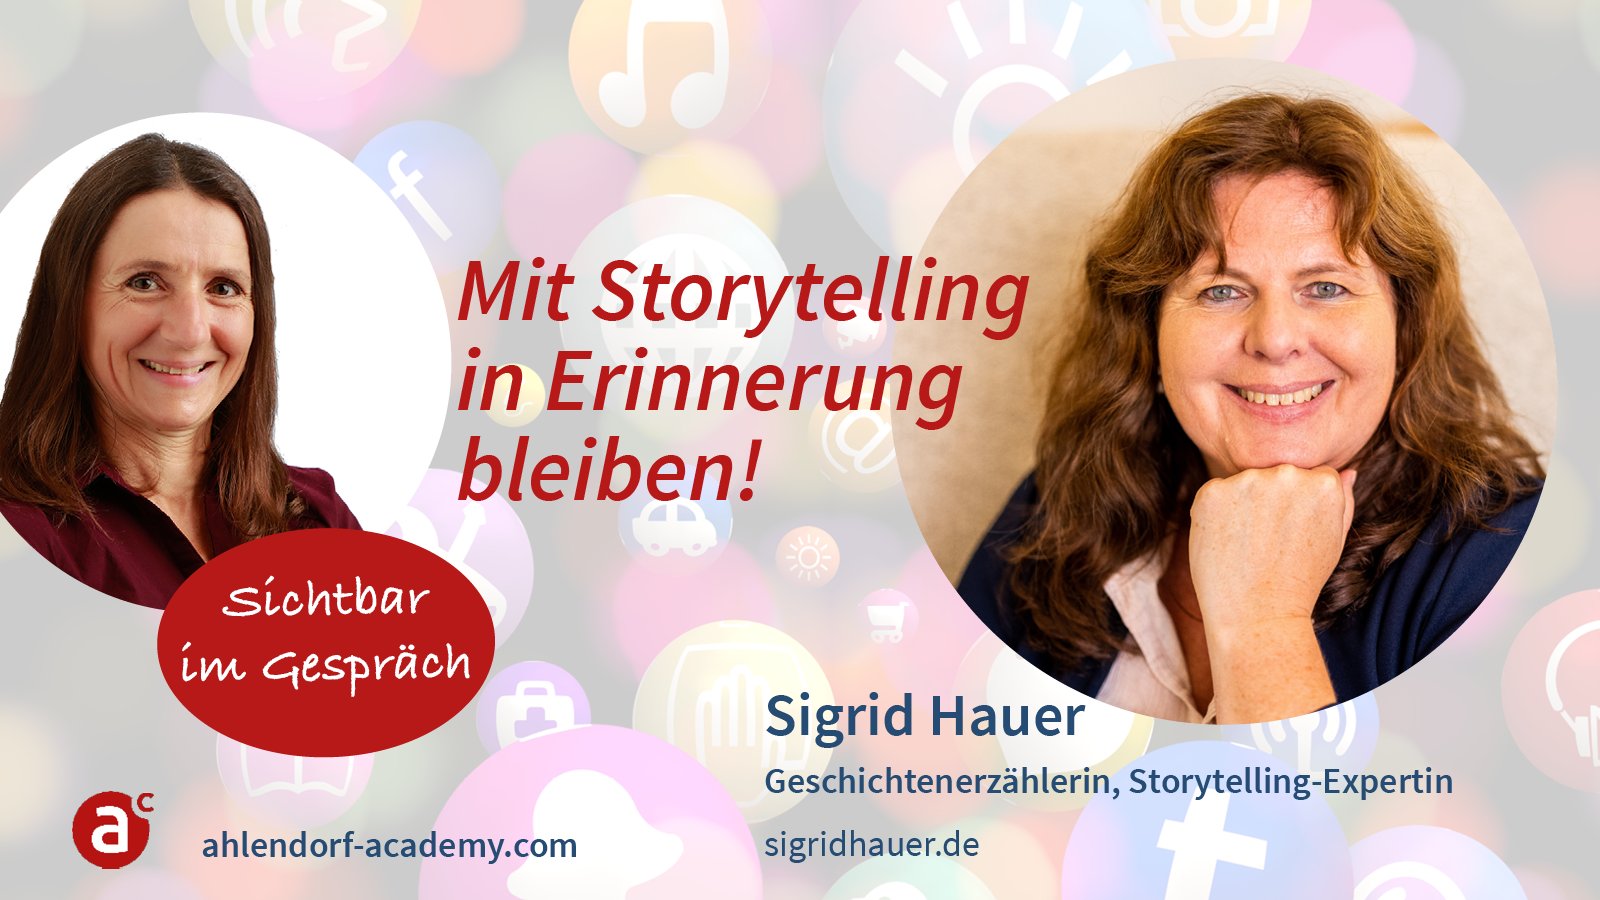 Sichtbar im Gespräch mit Sigrid Hauer: Mit Storytelling in Erinnerung bleiben!